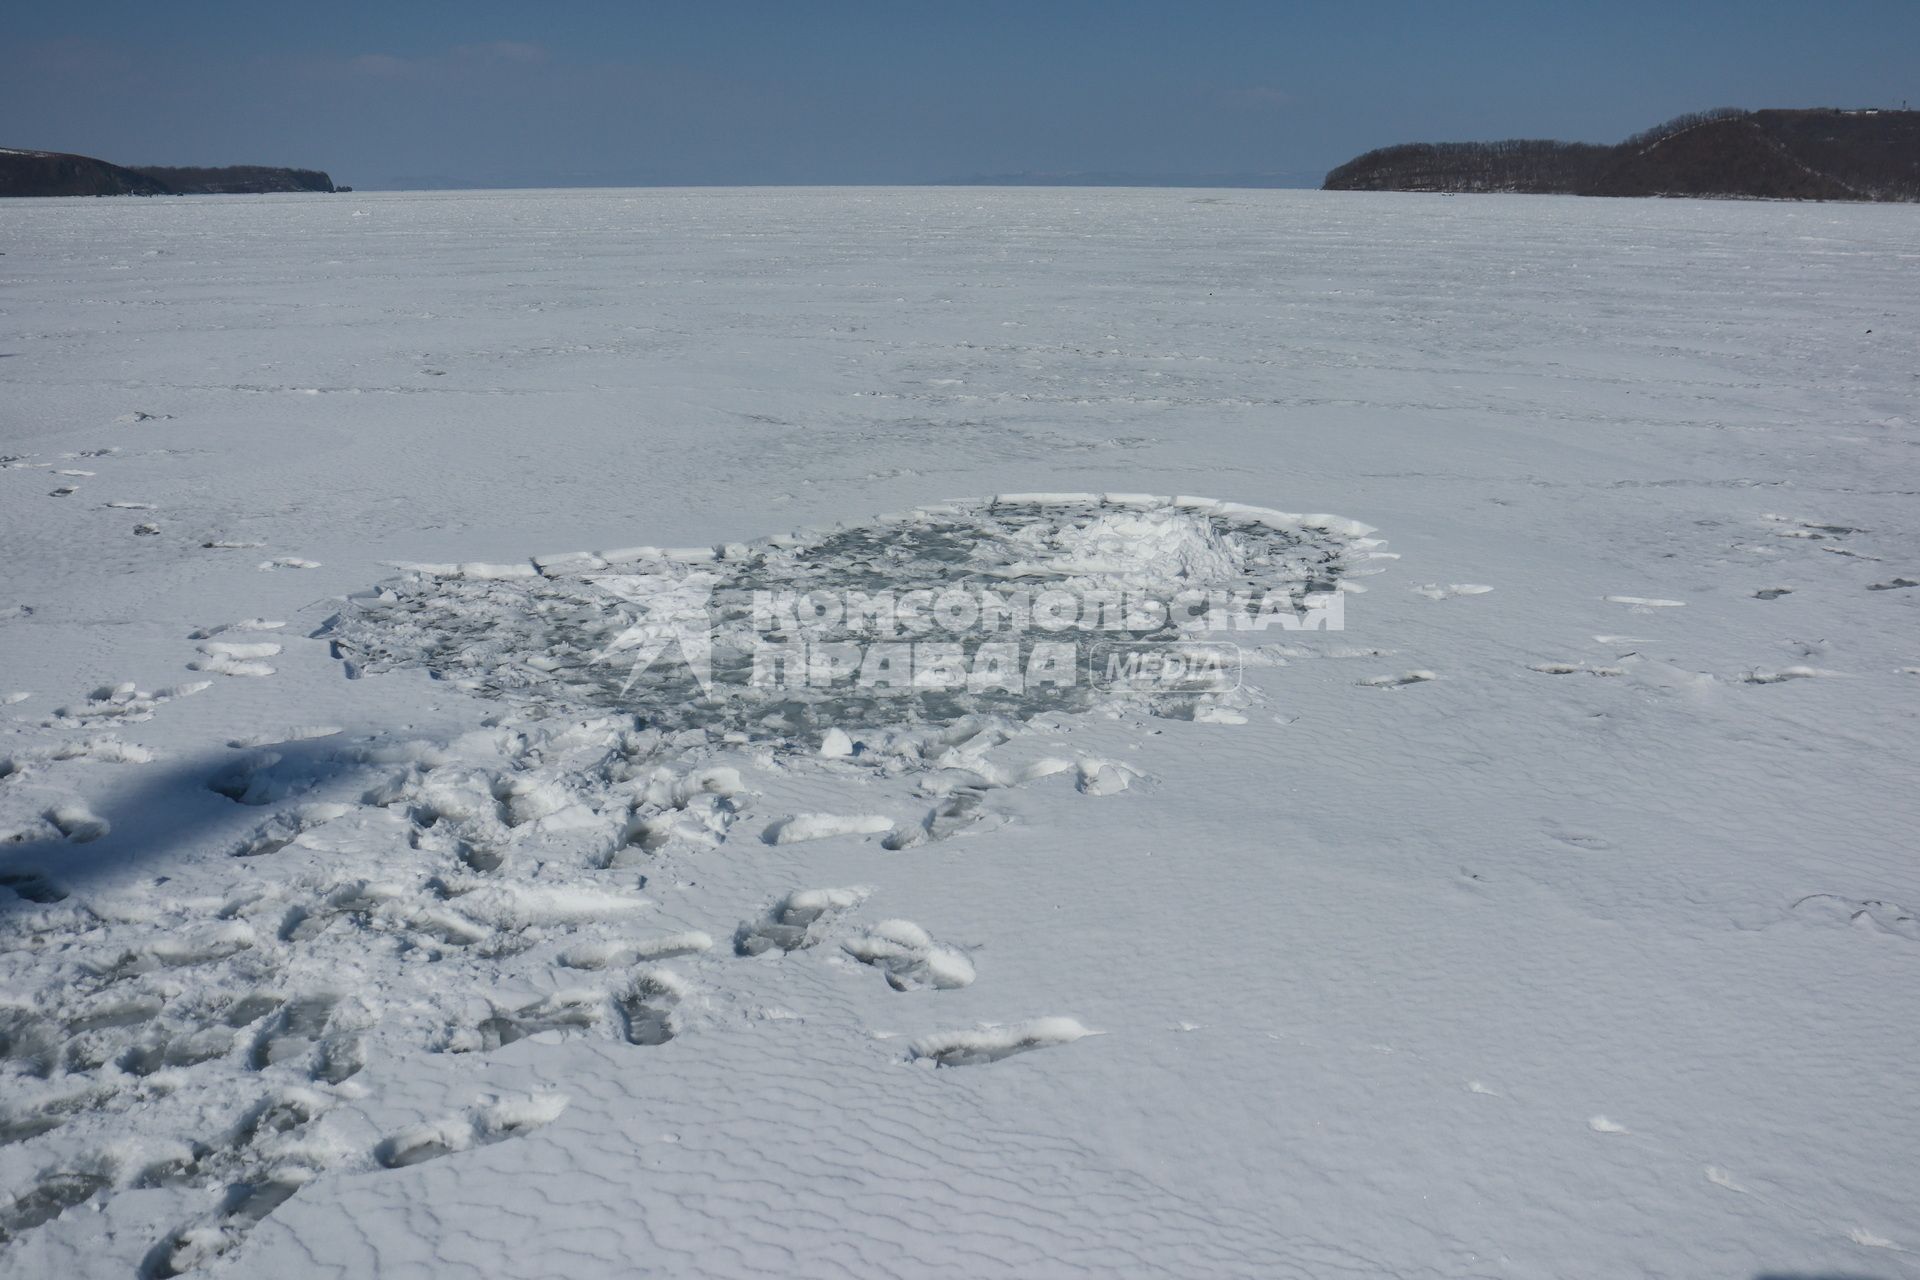 Владивосток. На острове Русский неизвестные засыпали снегом нефтяные пятна рядом с рыболовецкими траулерами `Ленск` и `Билене`. Место, откуда брали снег.